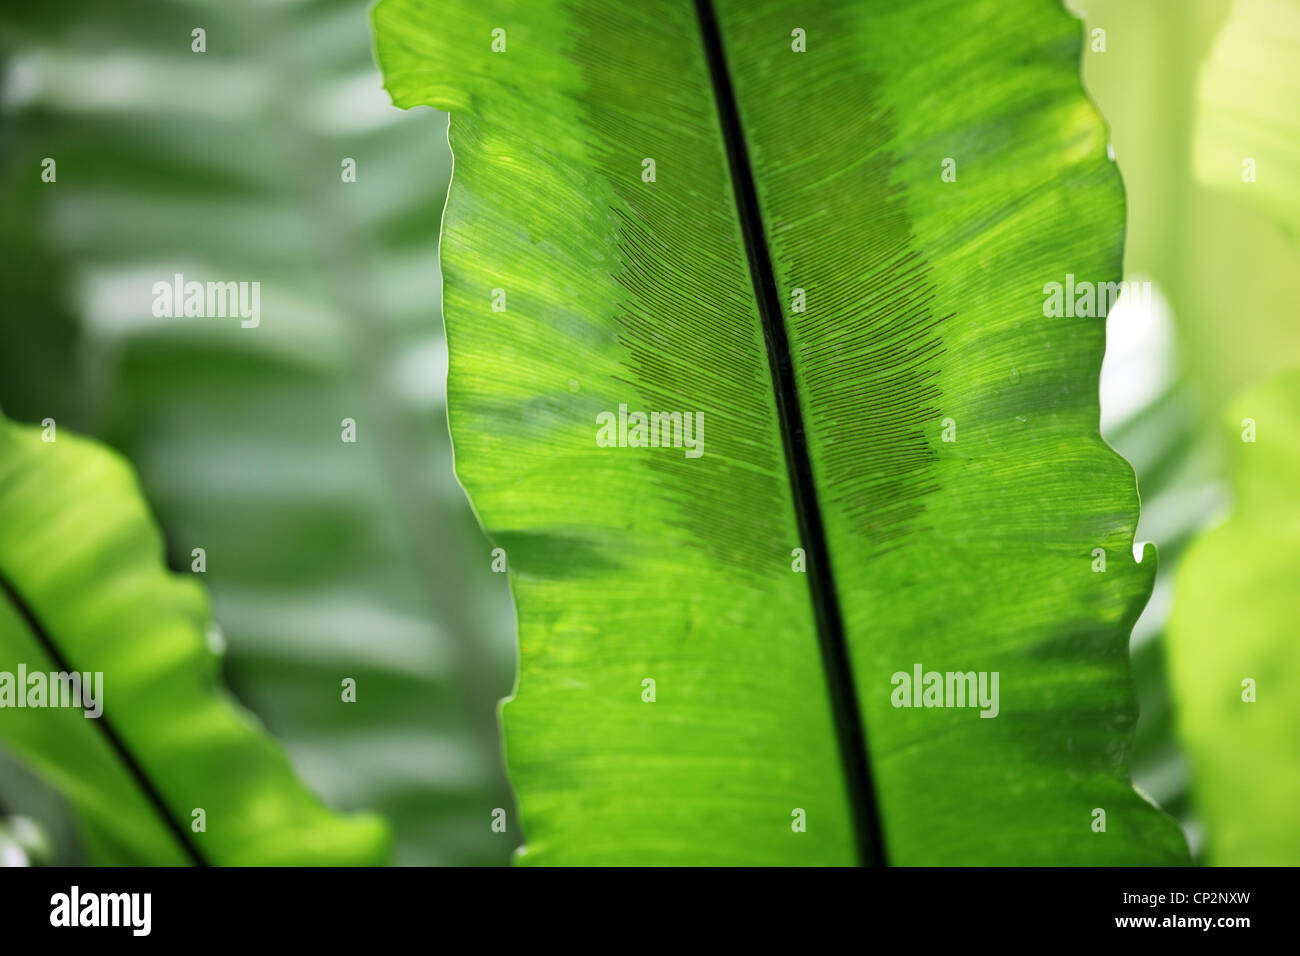 Plante de palmiers tropicaux, feuilles épaisses vert Banque D'Images